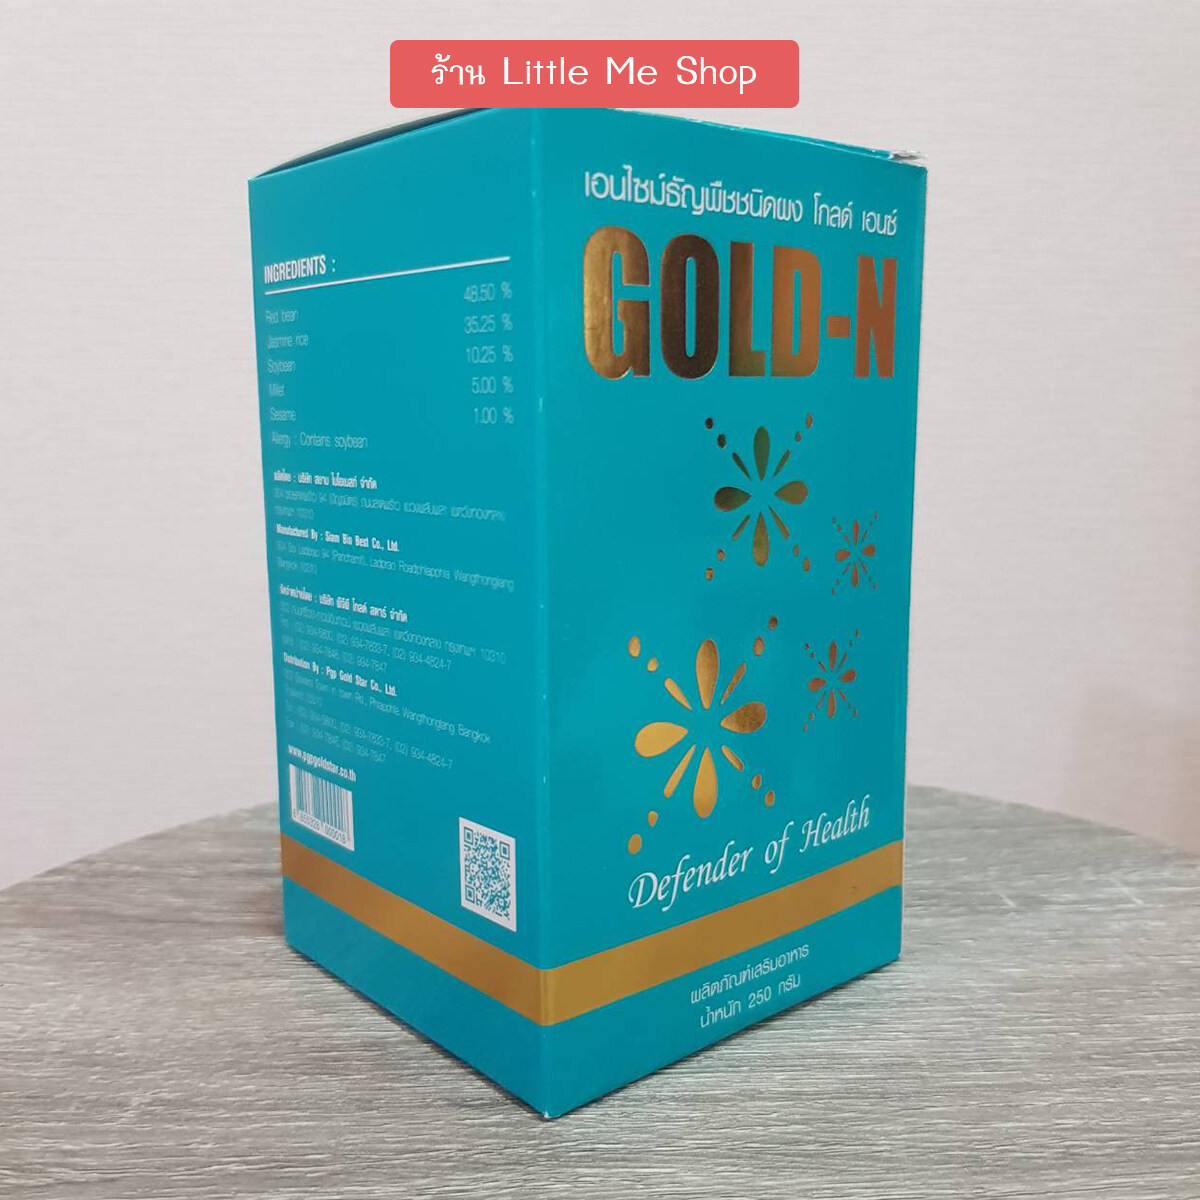 Gold N โกลด์ เอนซ์ : อาหารที่ช่วยสร้างพลังแห่งชีวิตที่ดี